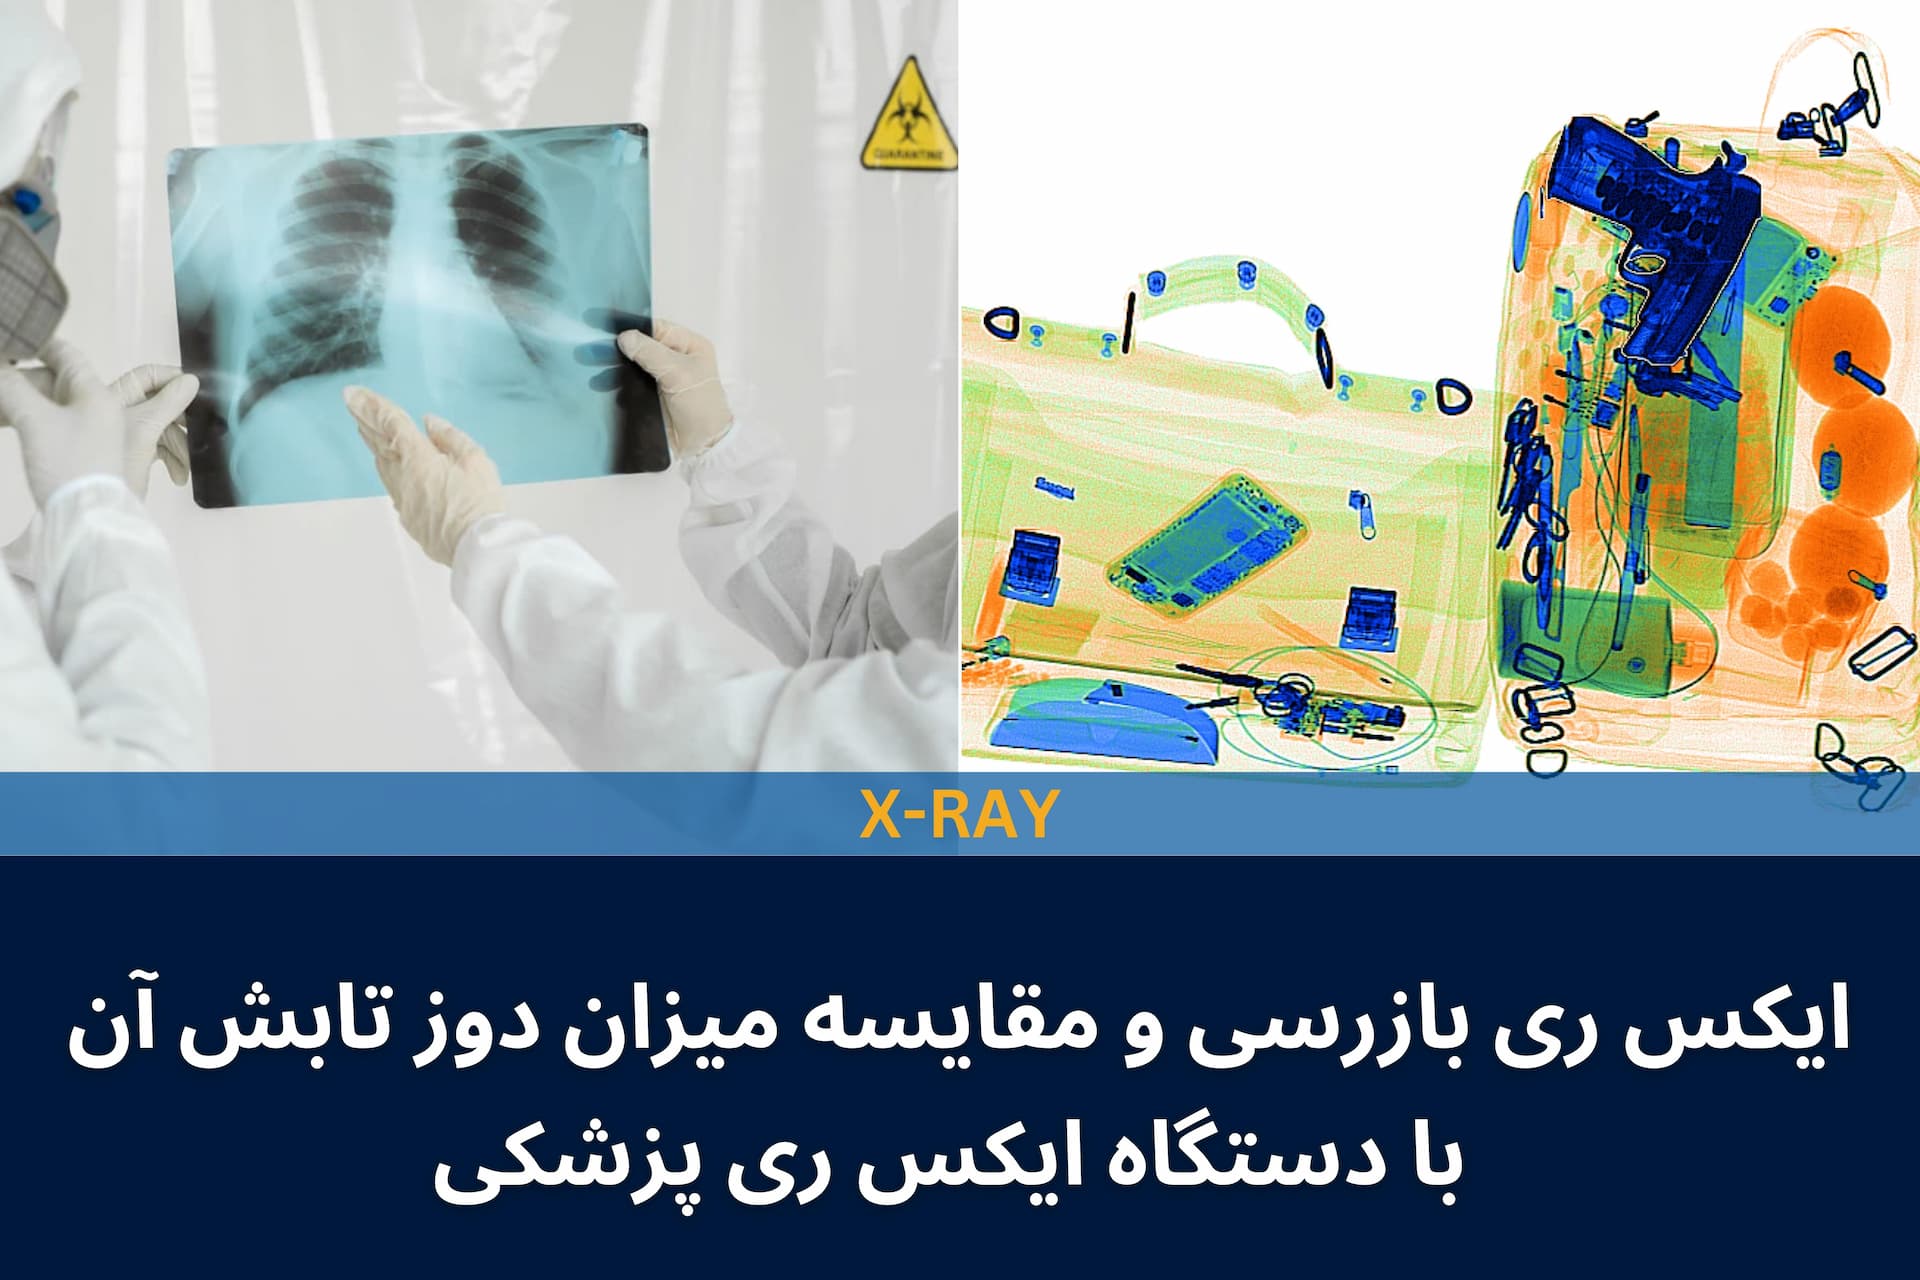 ایکس ری بازرسی و مقایسه میزان دوز تابش آن با دستگاه ایکس ری پزشکی